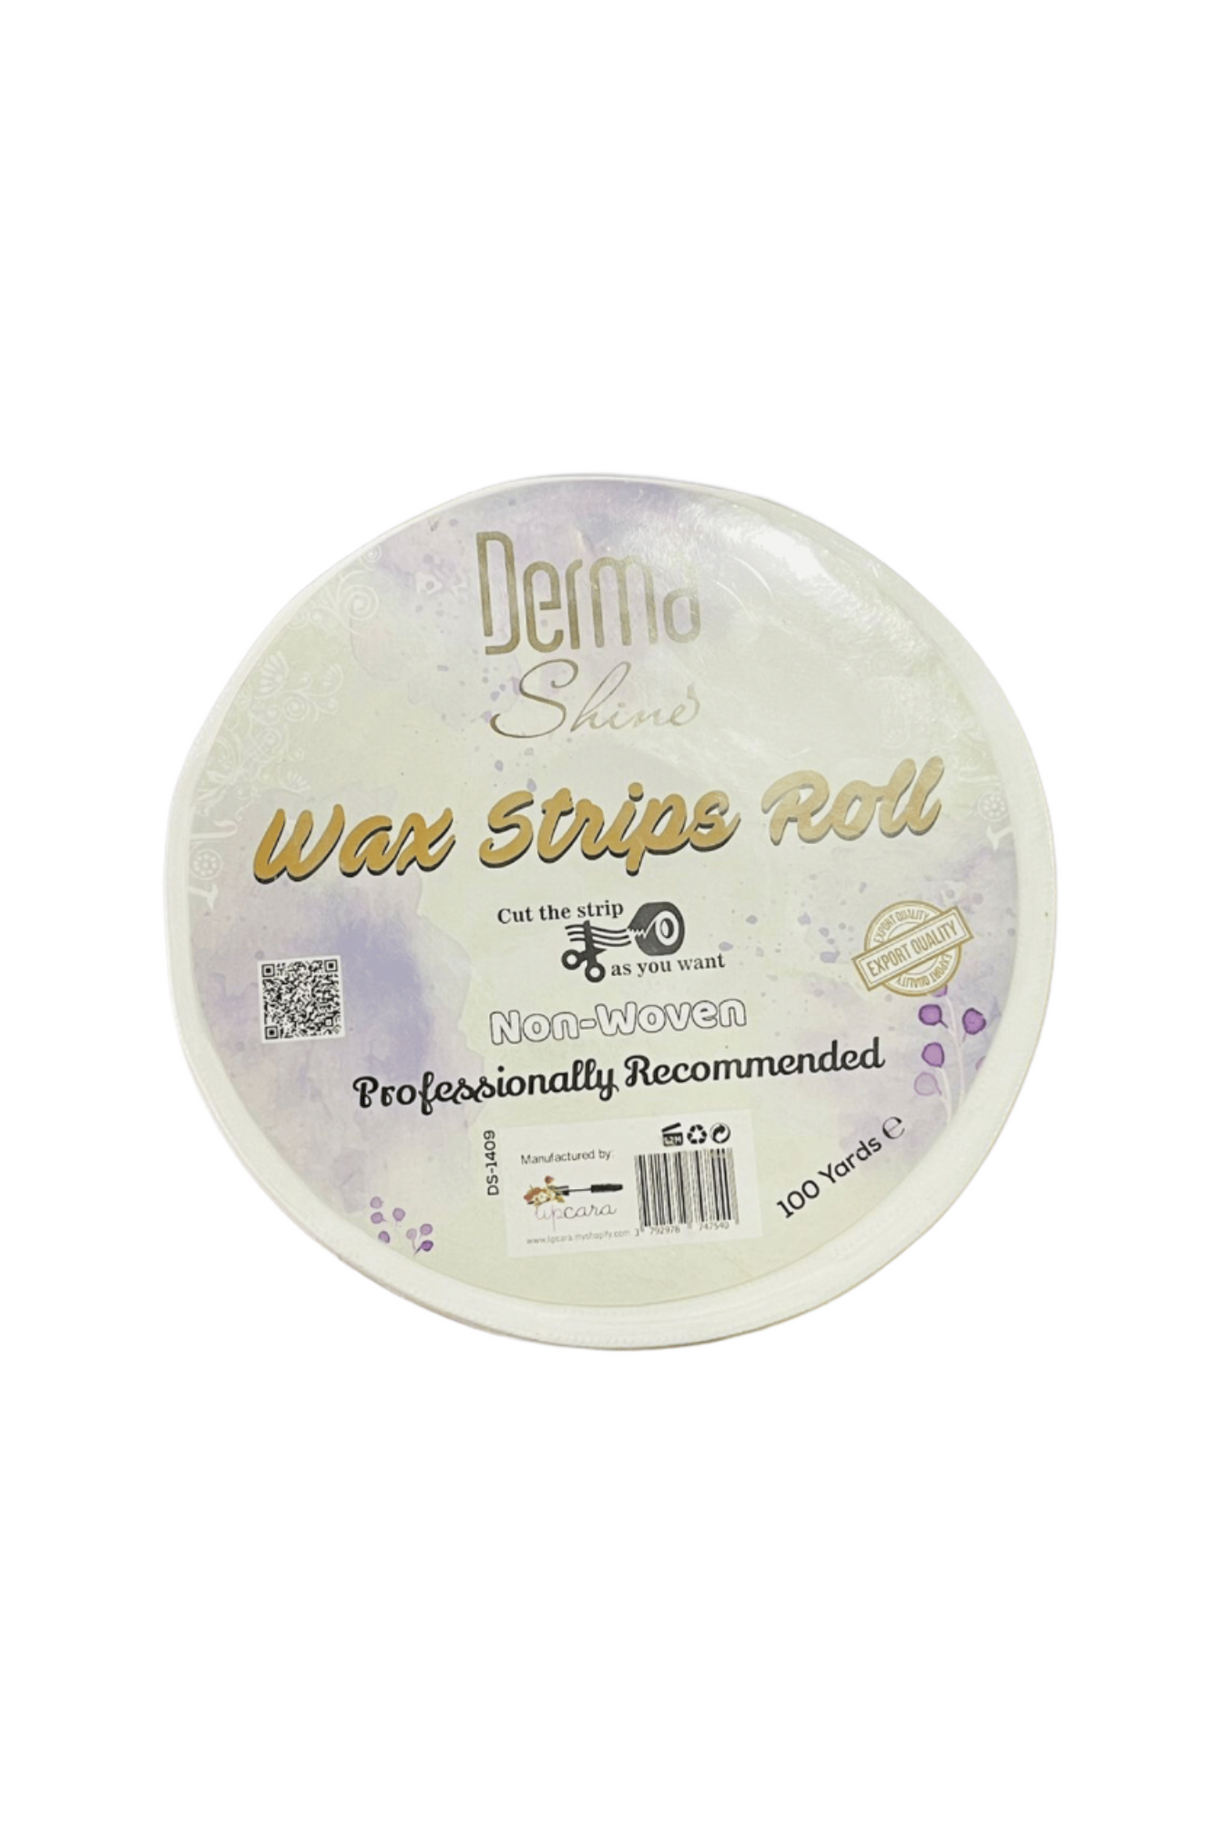 derma shine wax strips roll 100y